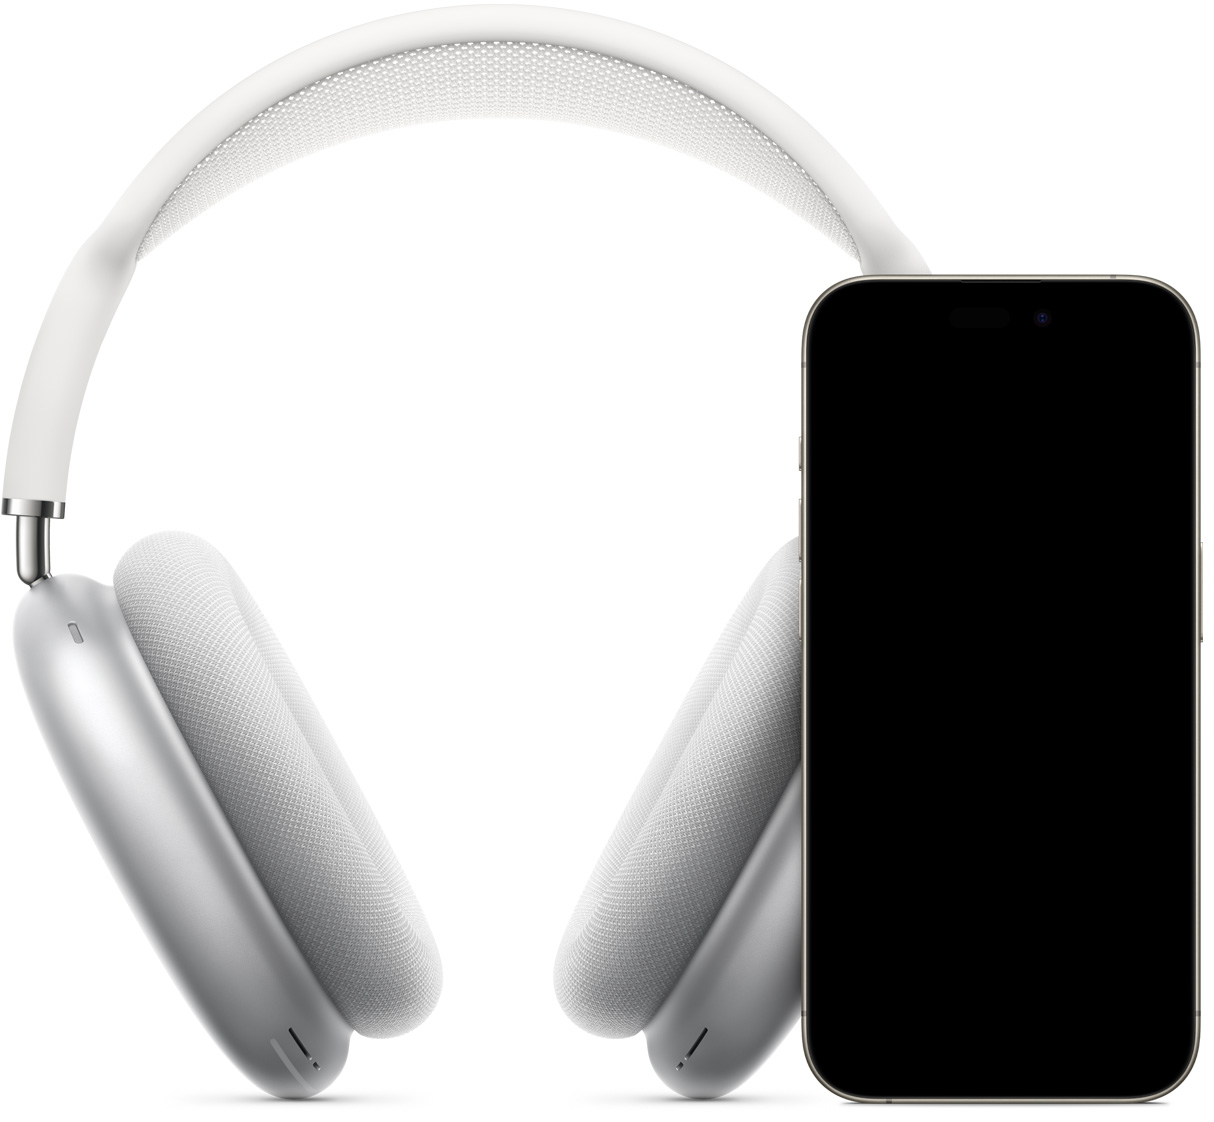 銀色 AirPods Max，其前方有一部顯示即時設定畫面的 iPhone，畫面上出現連線按鈕，輕點即可配對 AirPods Max。